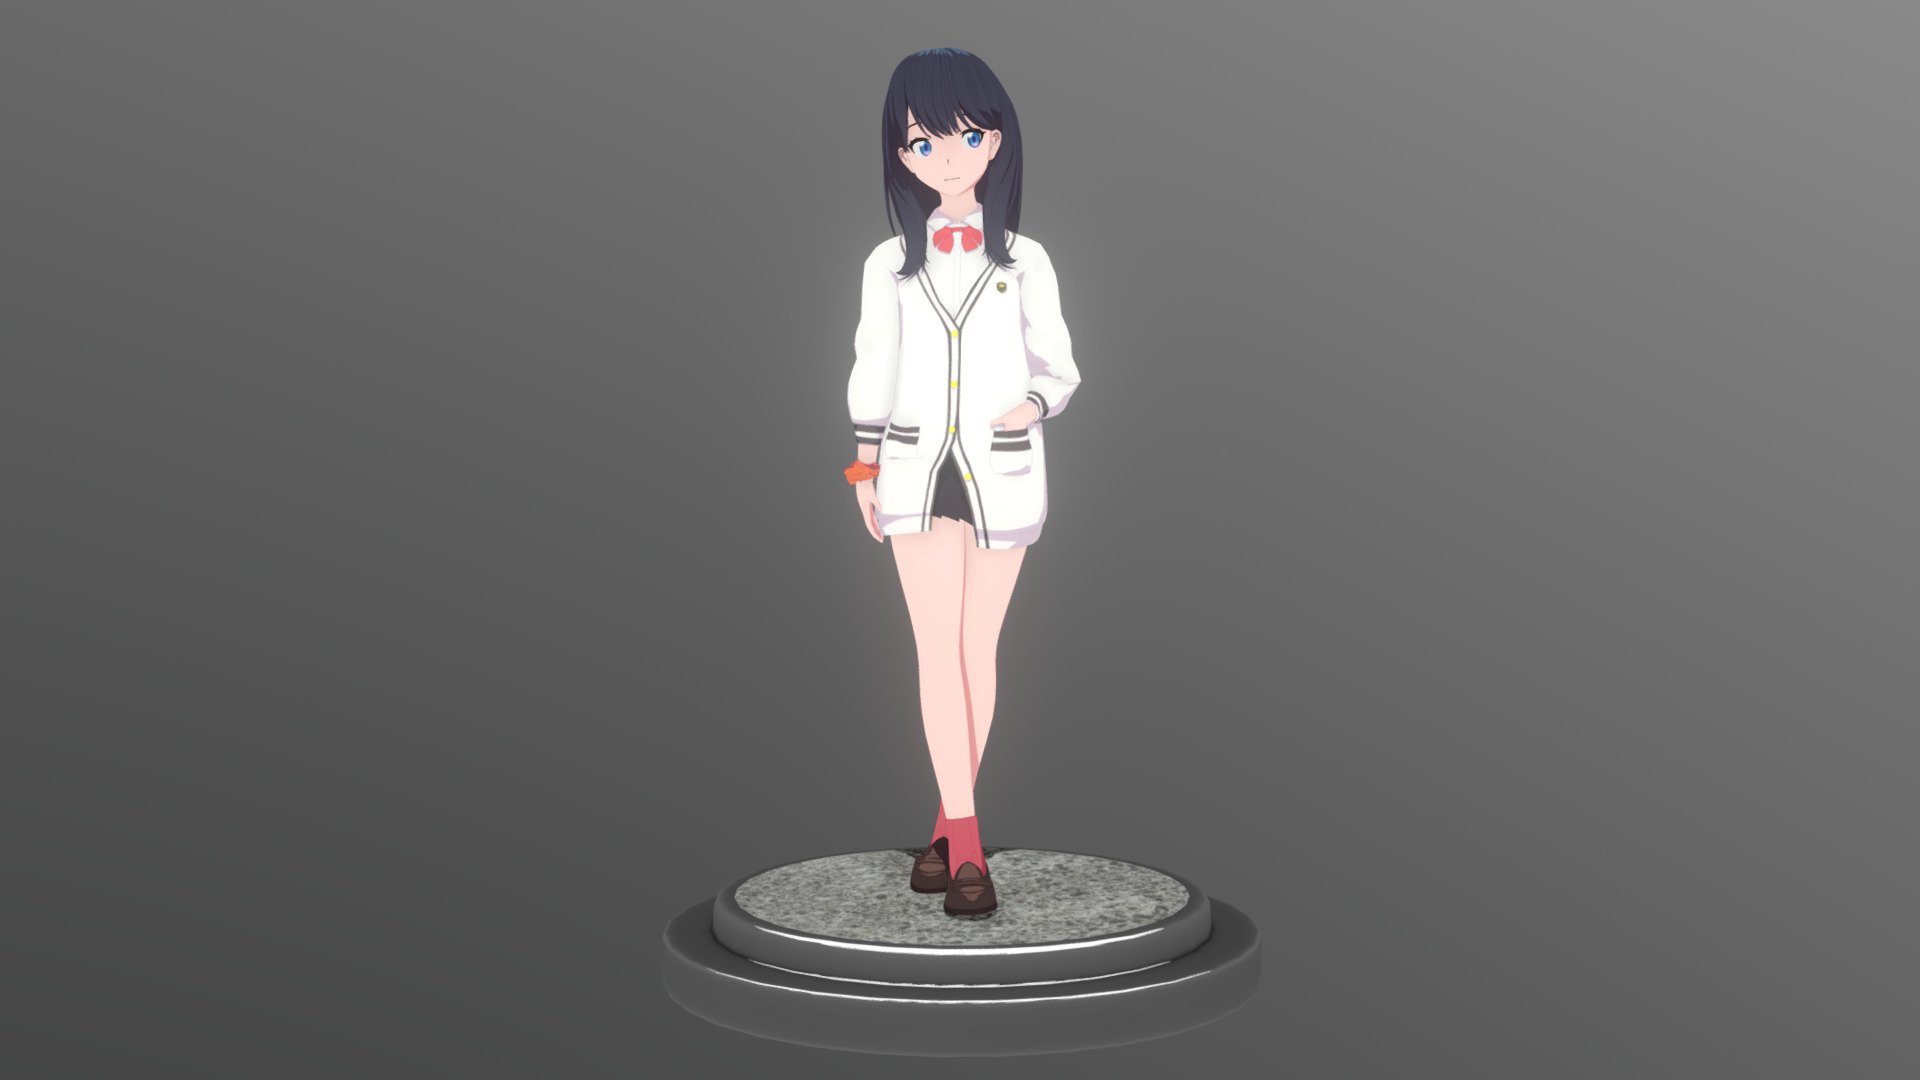 Rikka Takarada (宝多 六花) From anime : SSSS.Gridman

Modeling &amp; Texturing Time : 9 Hours - Rikka Takarada (宝多 六花) -  	SSSS.Gridman - 3D model by zenzoit 3d model